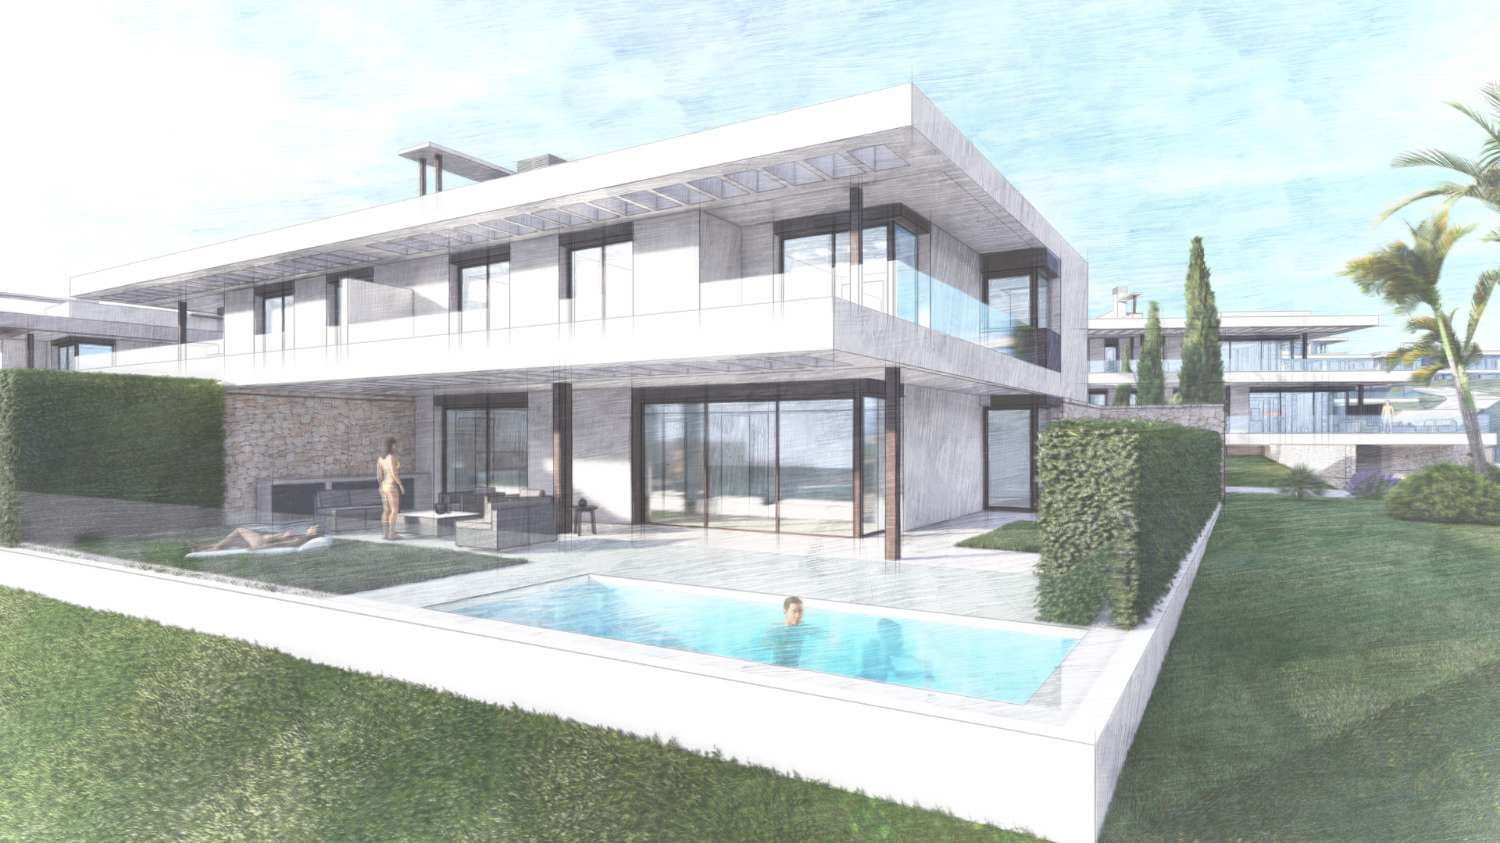 Exclusieve villa in Marbella met 4 slaapkamers in urbanisatie met beveiliging.